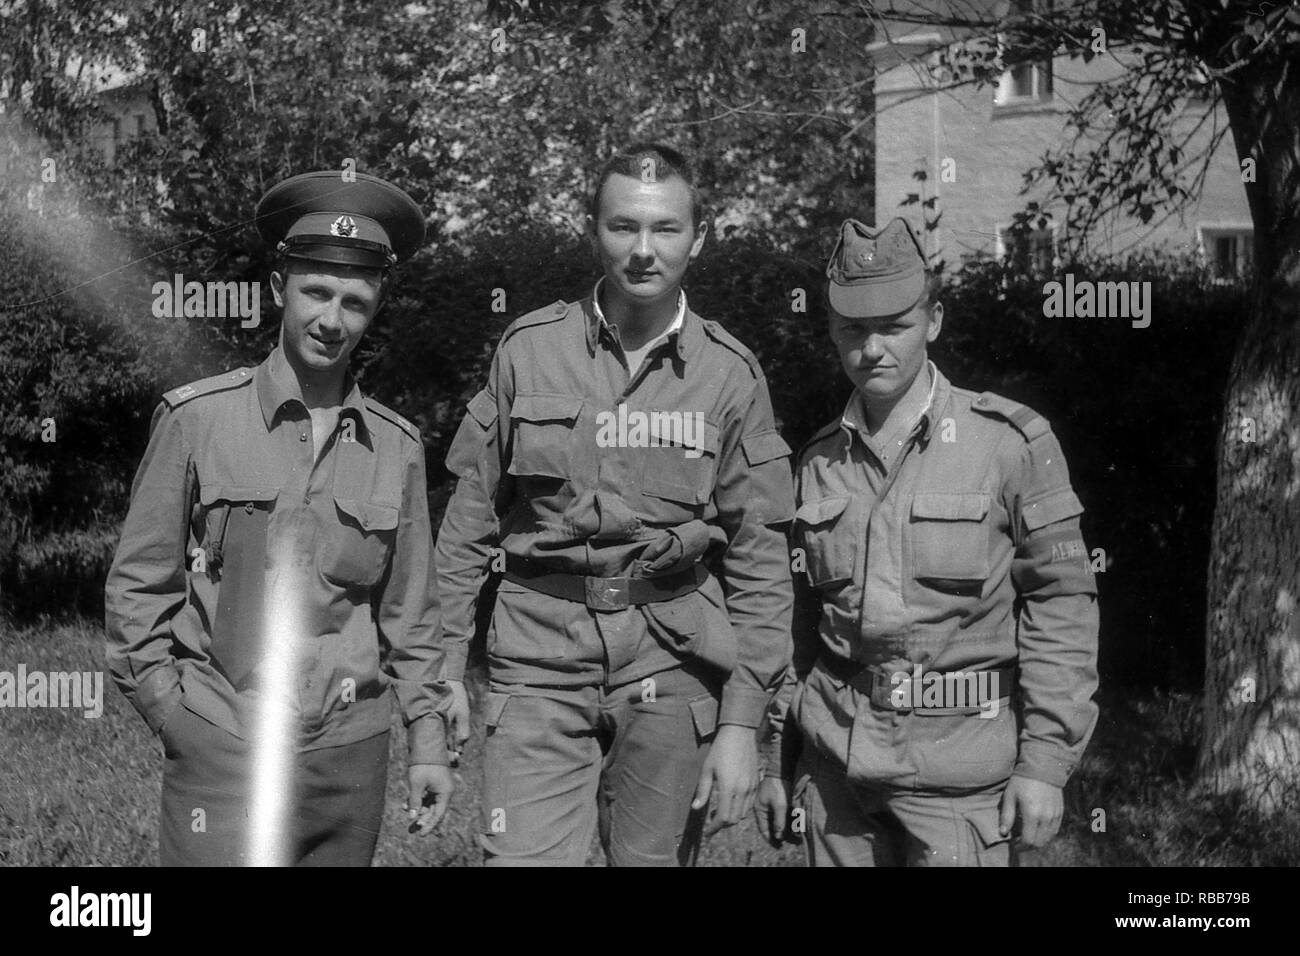 La région de Moscou, Russie - circa 1992 : Portrait de soldats de l'armée russe. Trois camarades. Numérisation de film. Les grosses. Banque D'Images